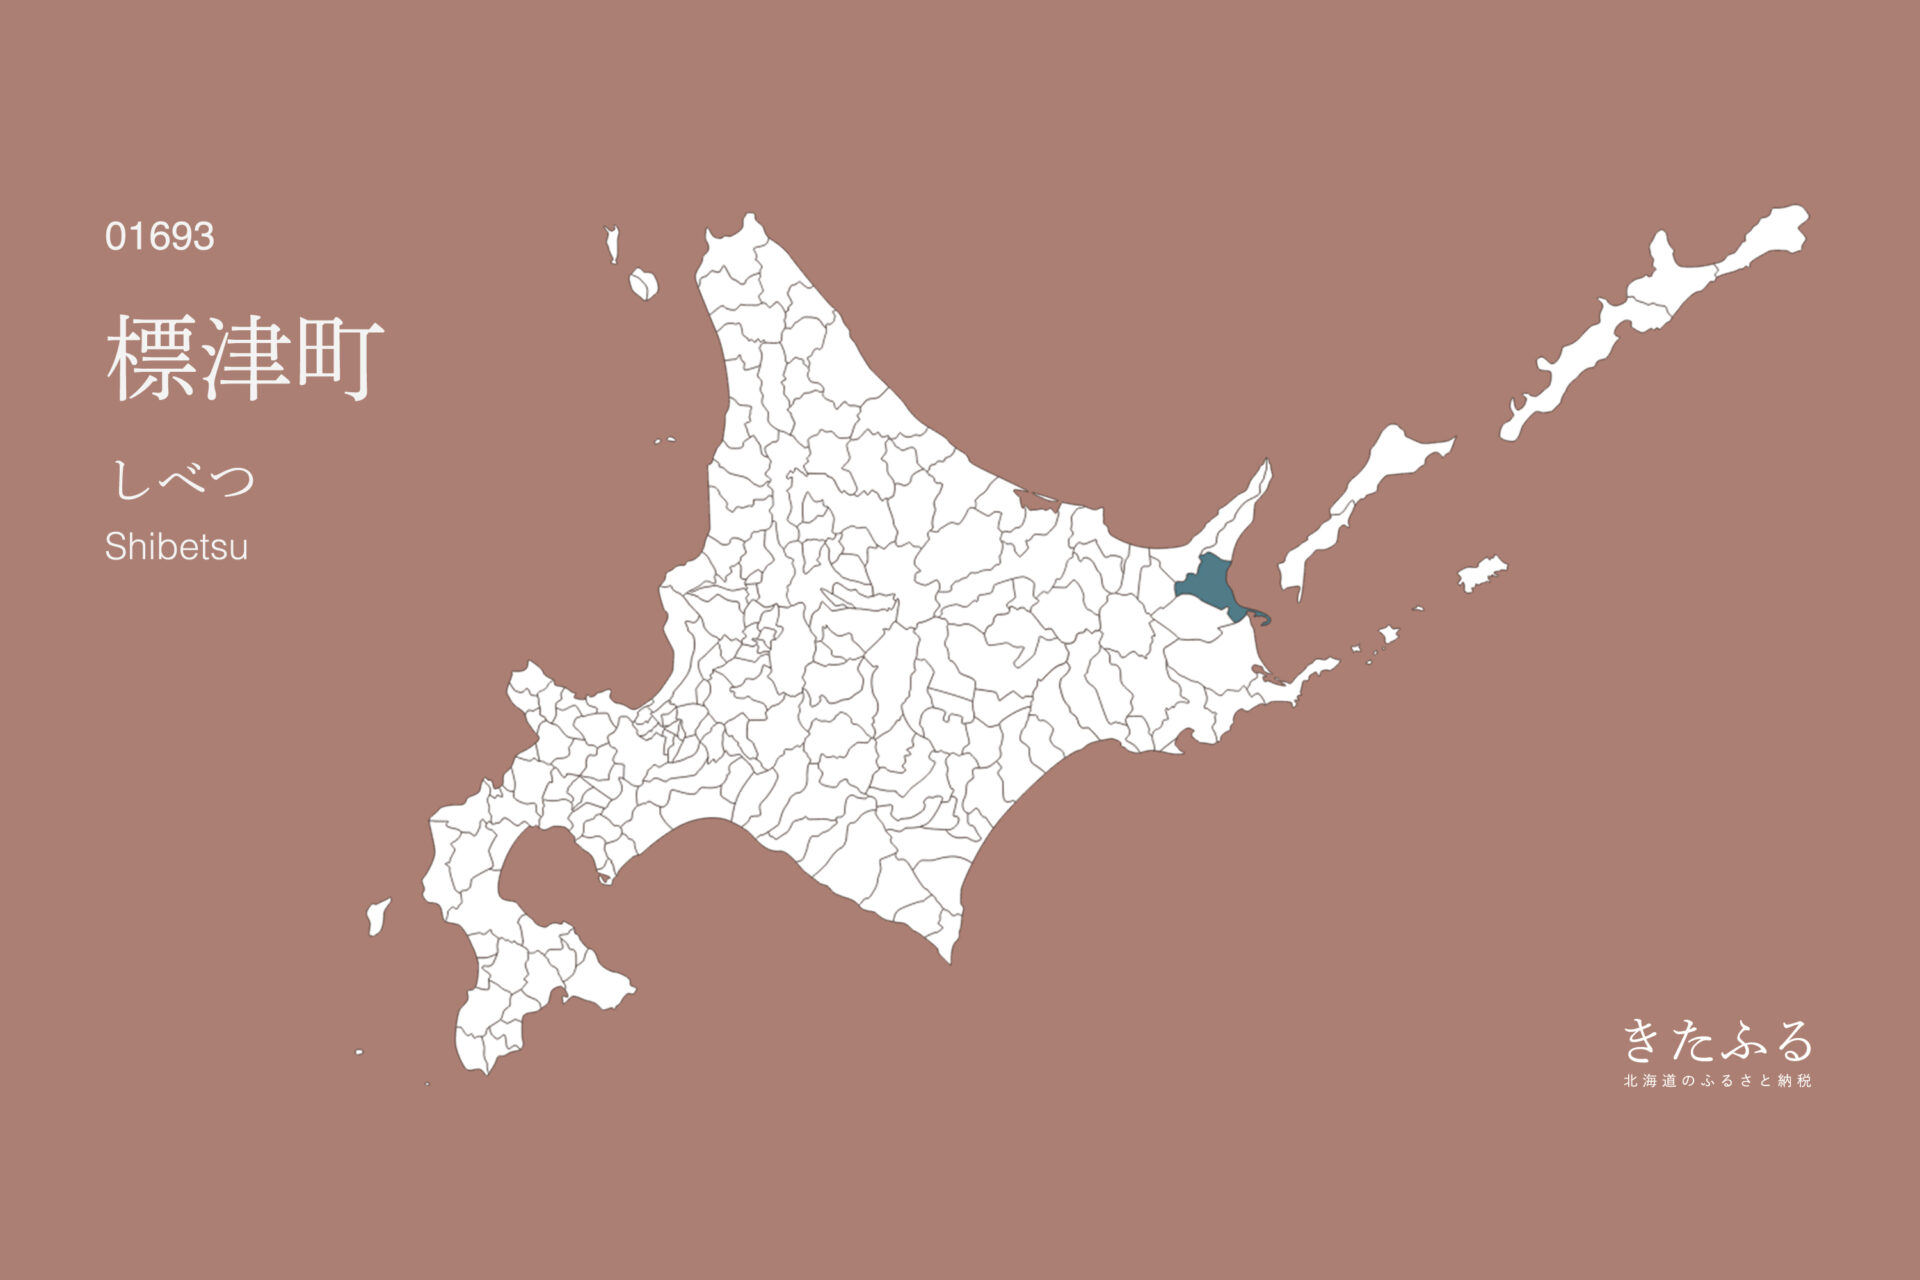 北海道「標津町」のふるさと納税 返礼品